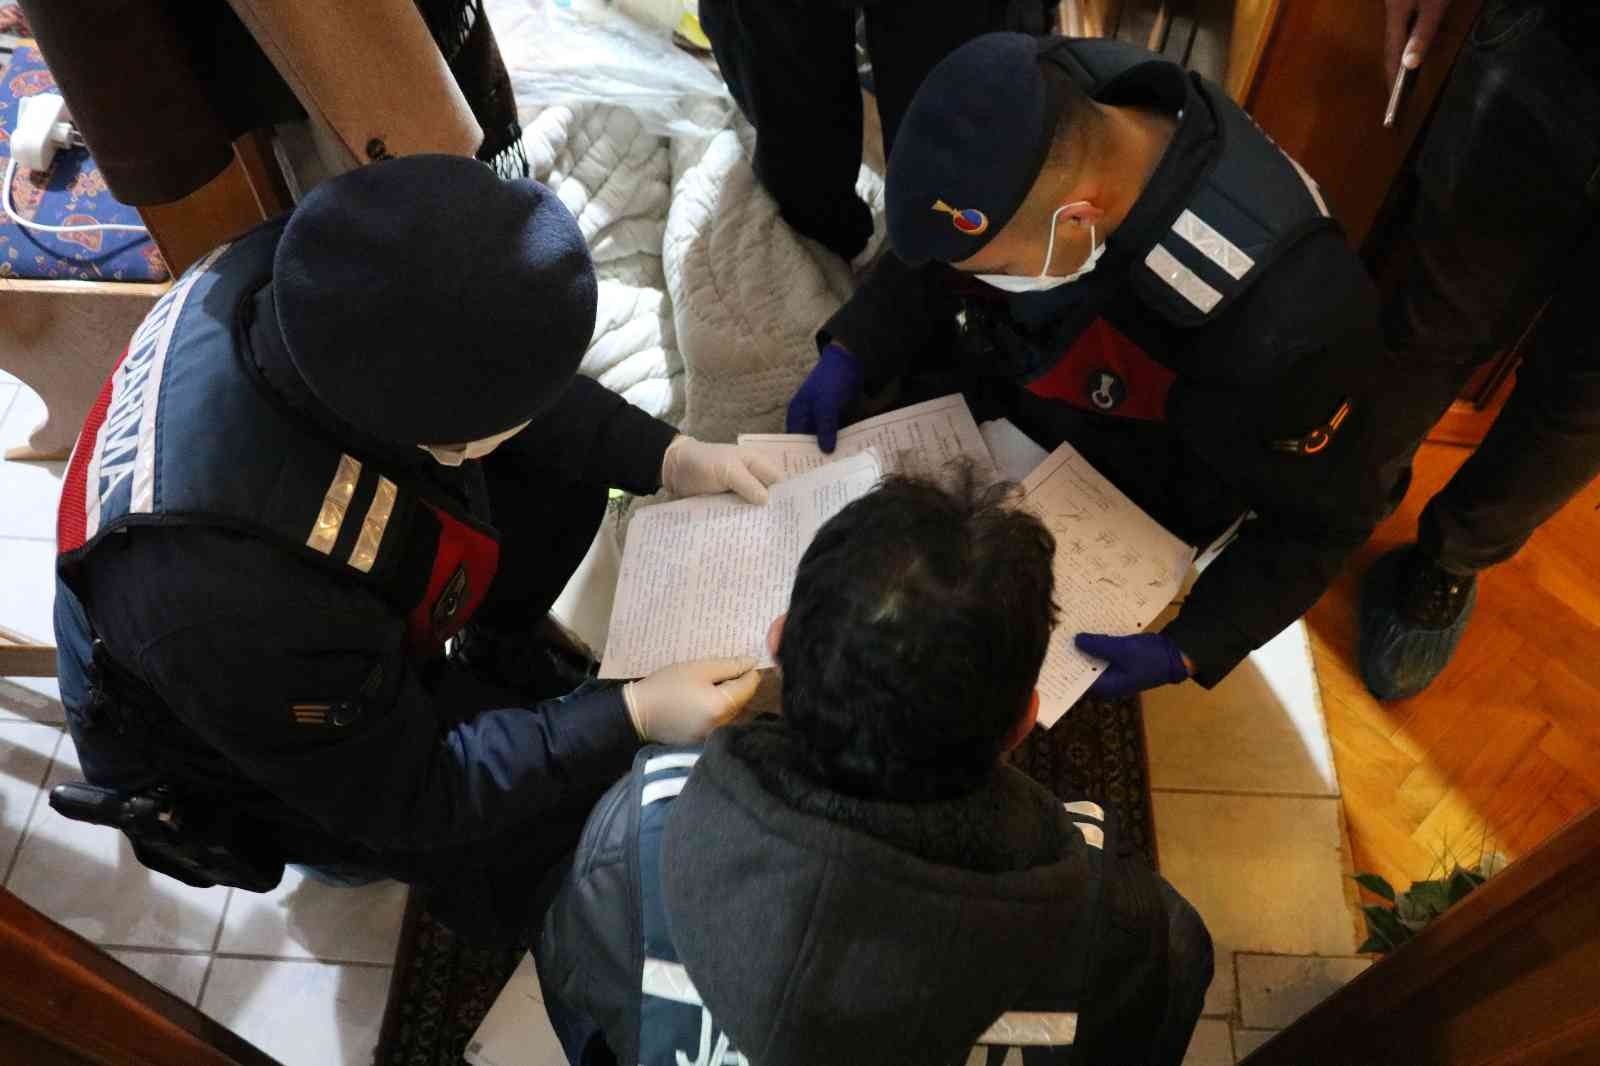 Kastamonu’da FETÖ’ye şafak operasyonu: 3 gözaltı #kastamonu